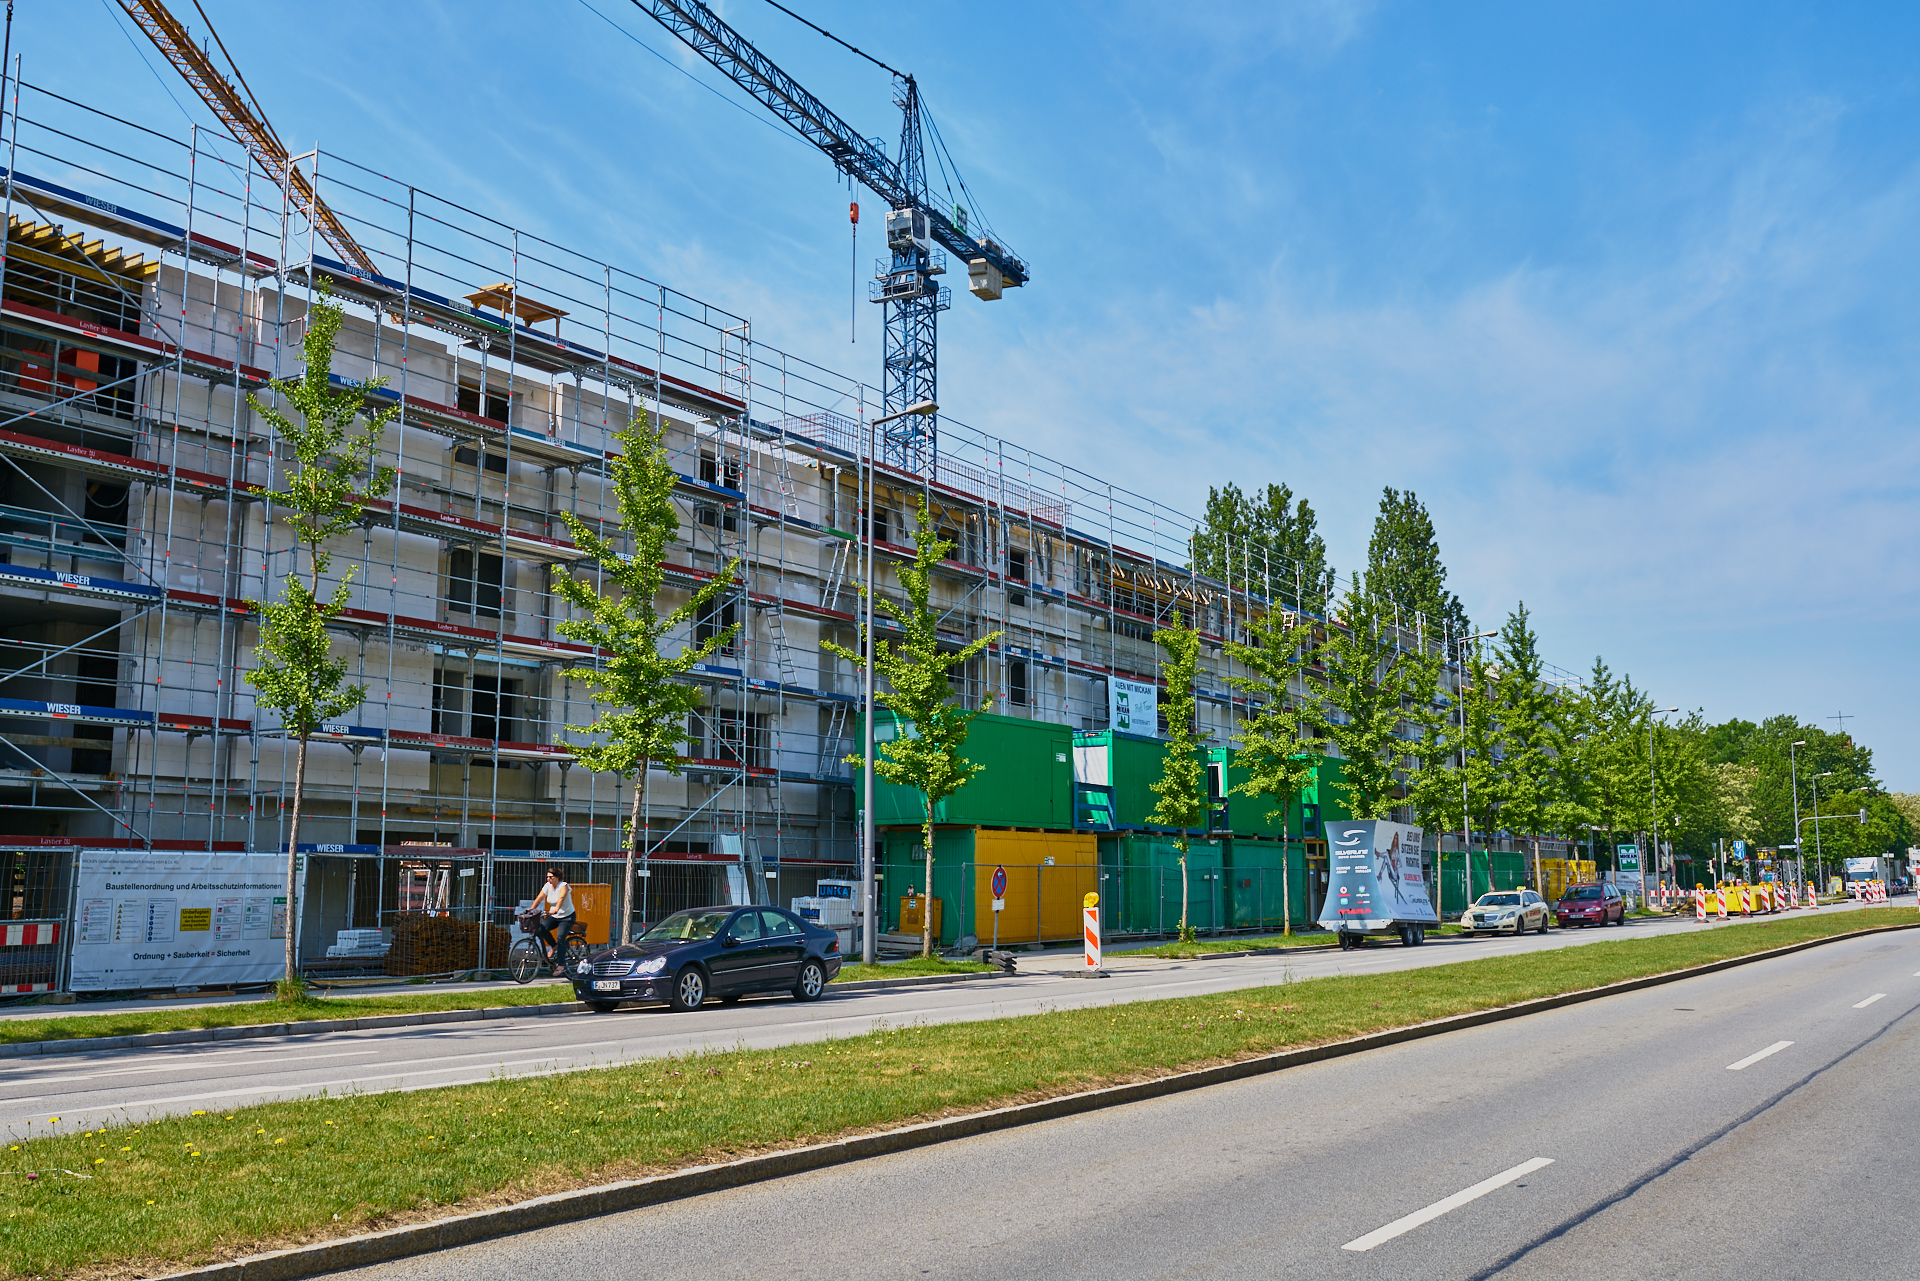 19.05.2018 - Baustelle Maikäfersiedlung in der Bad Schachener Straße in Neuperlach